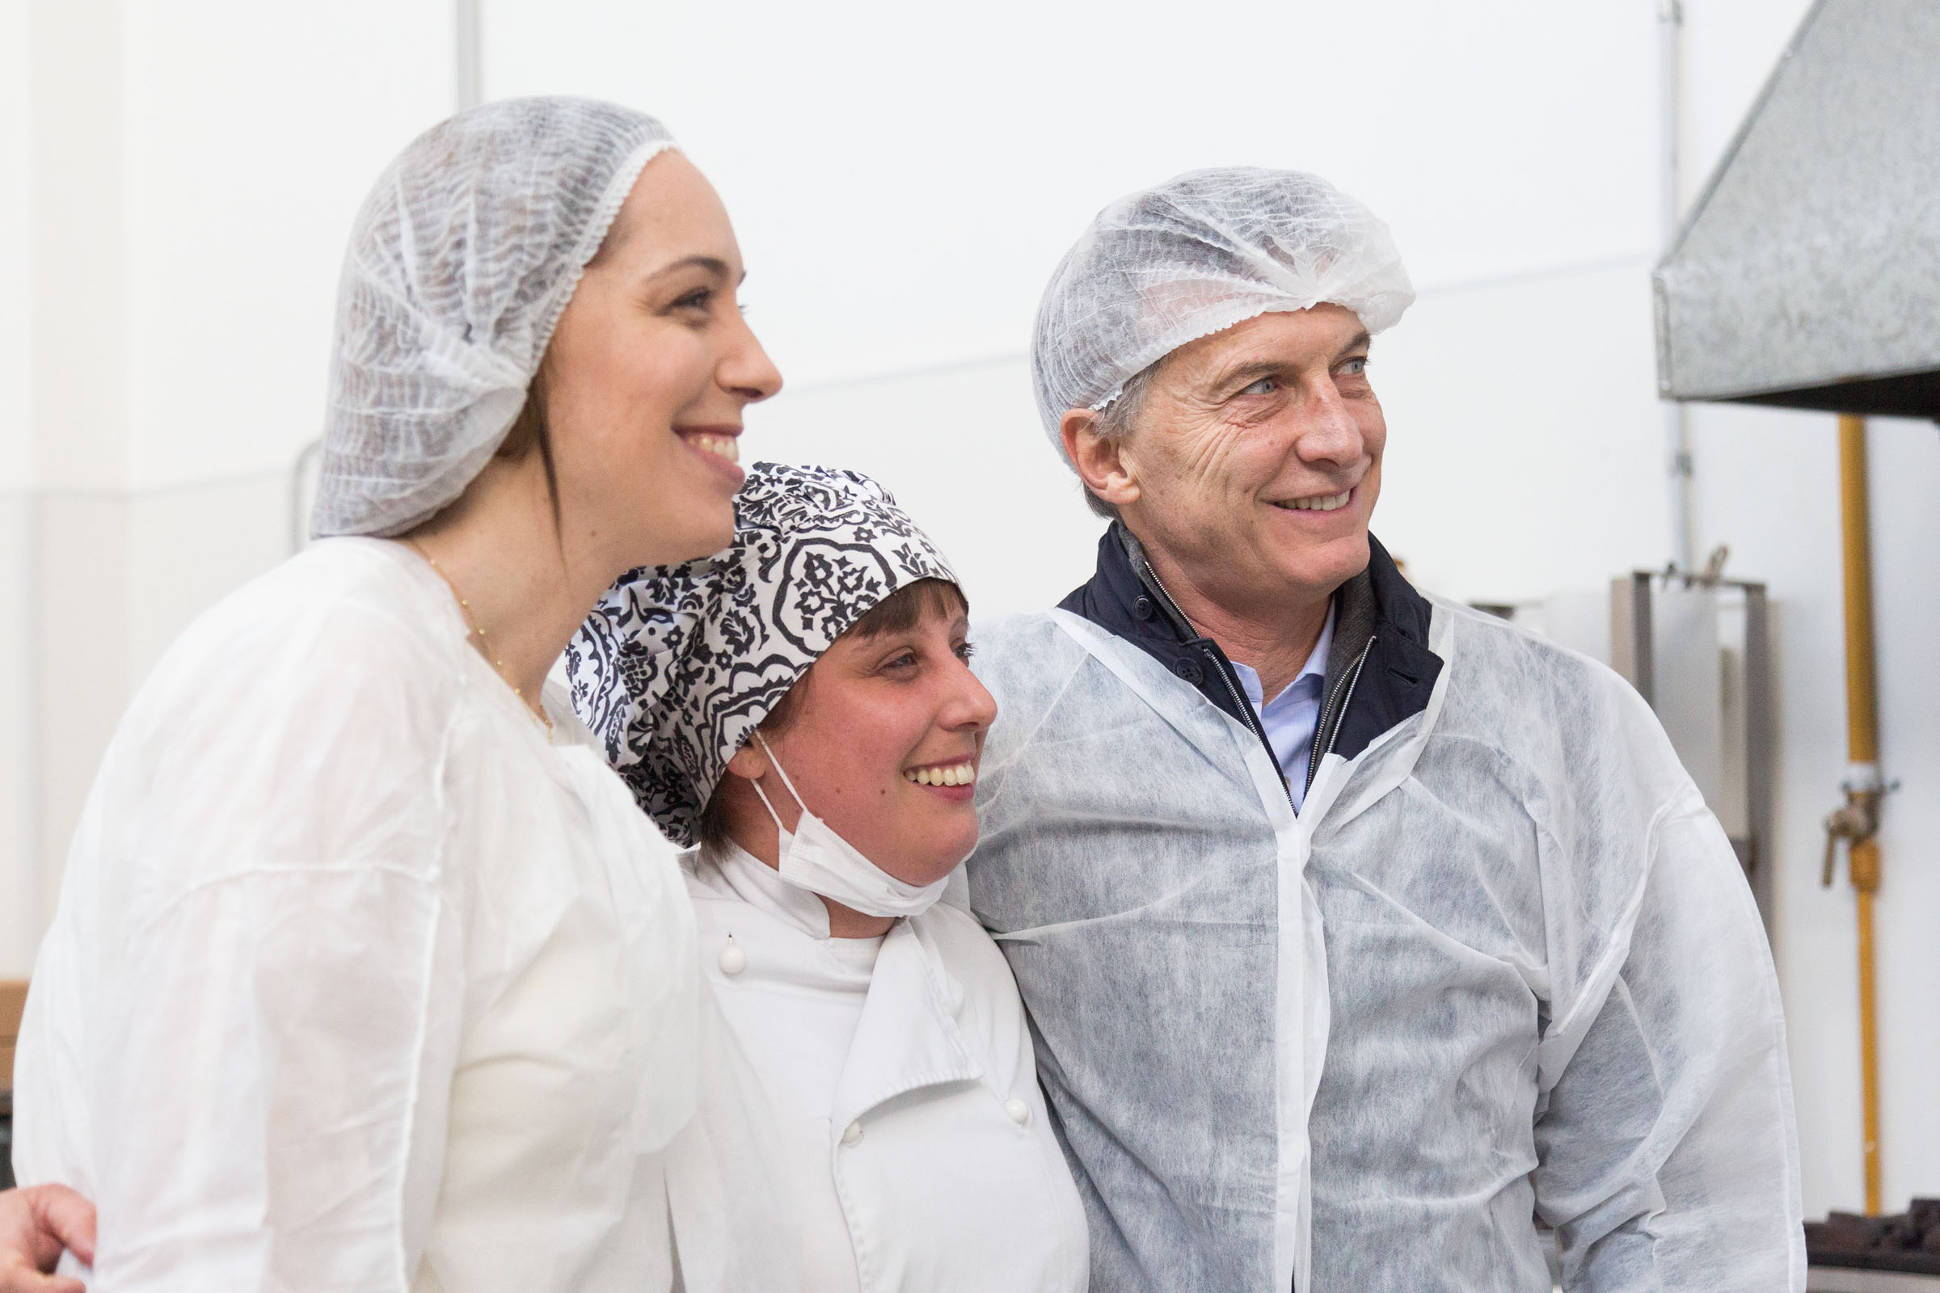 El Presidente visitó una pastelería artesanal en Vicente López